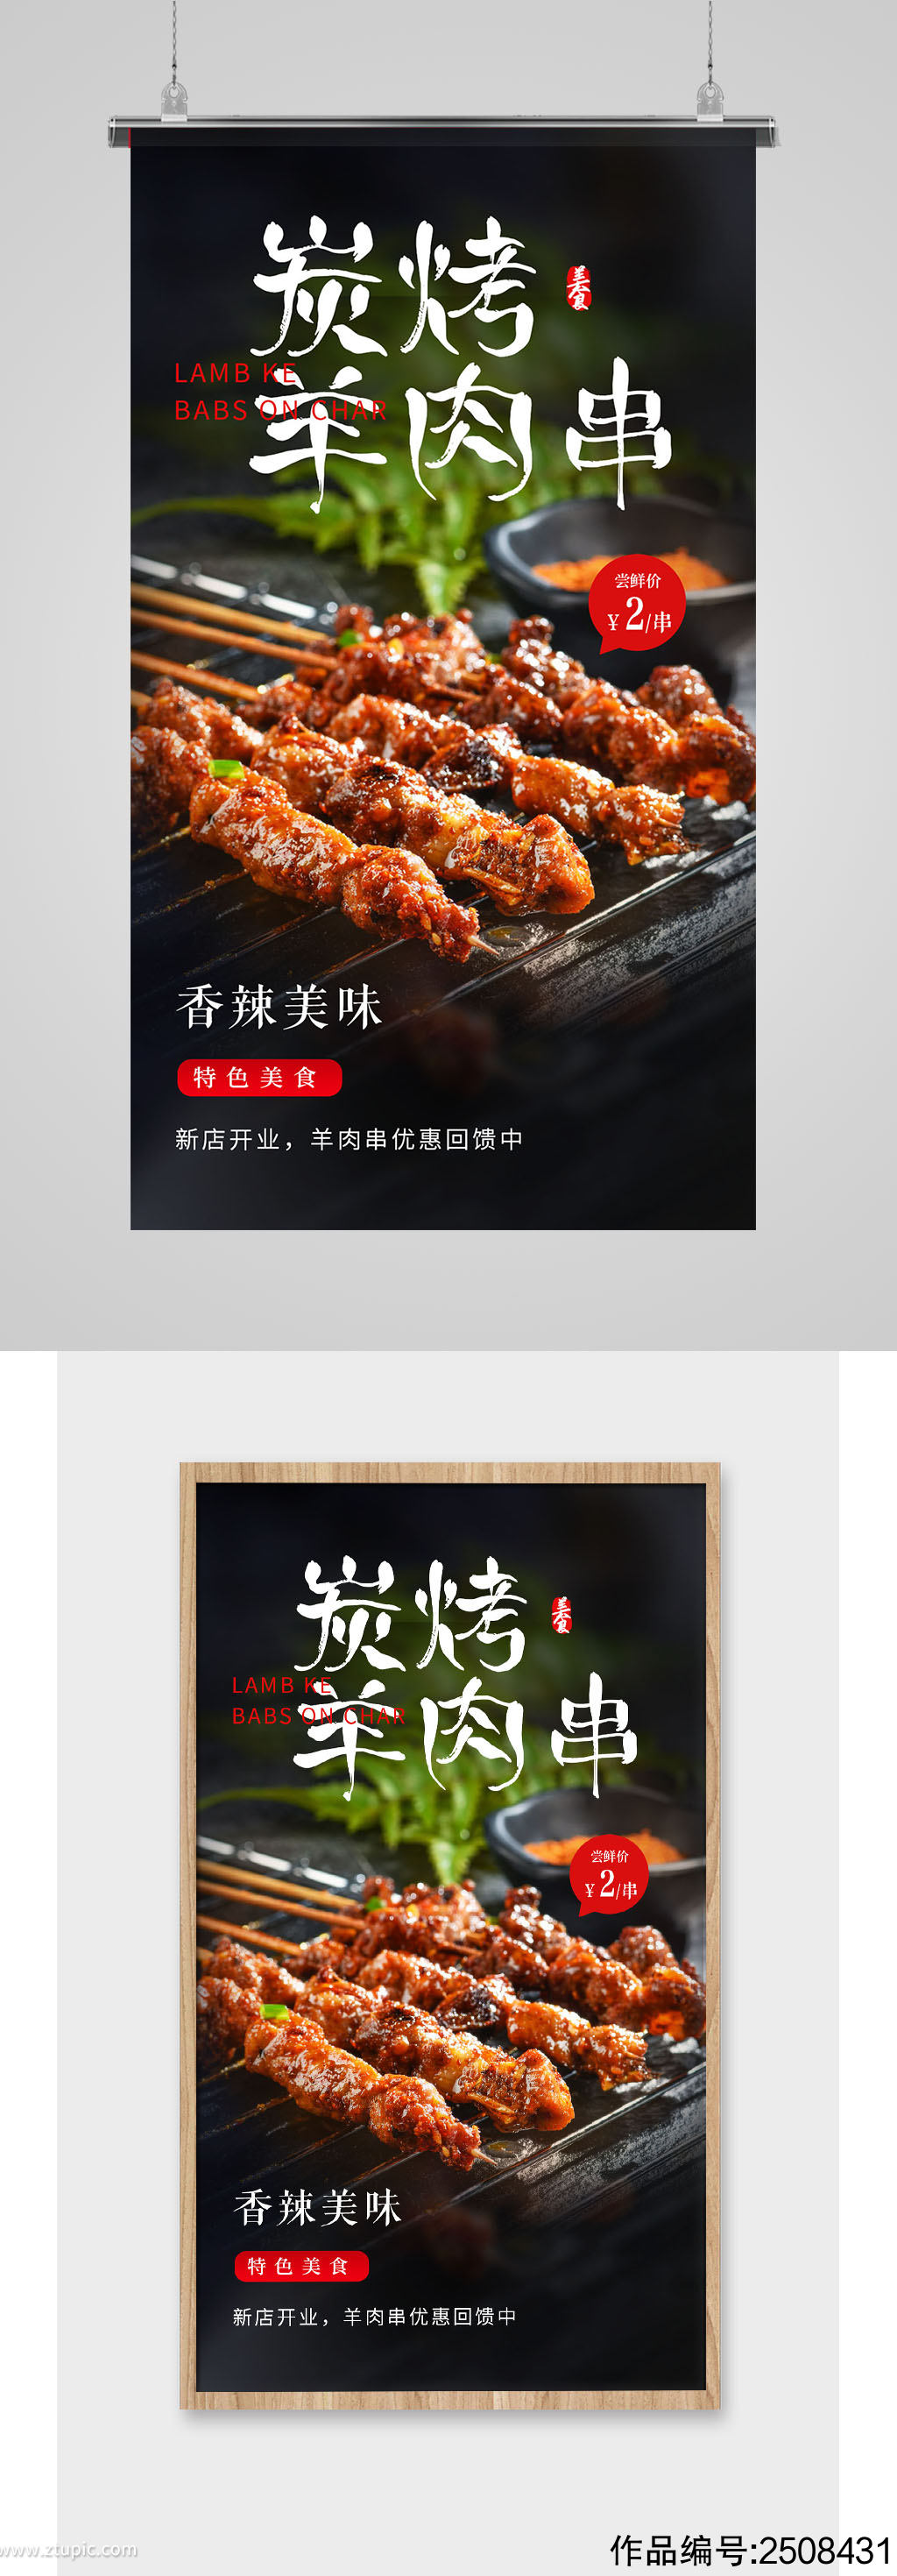 简约碳烤羊肉串烧烤宣传促销海报